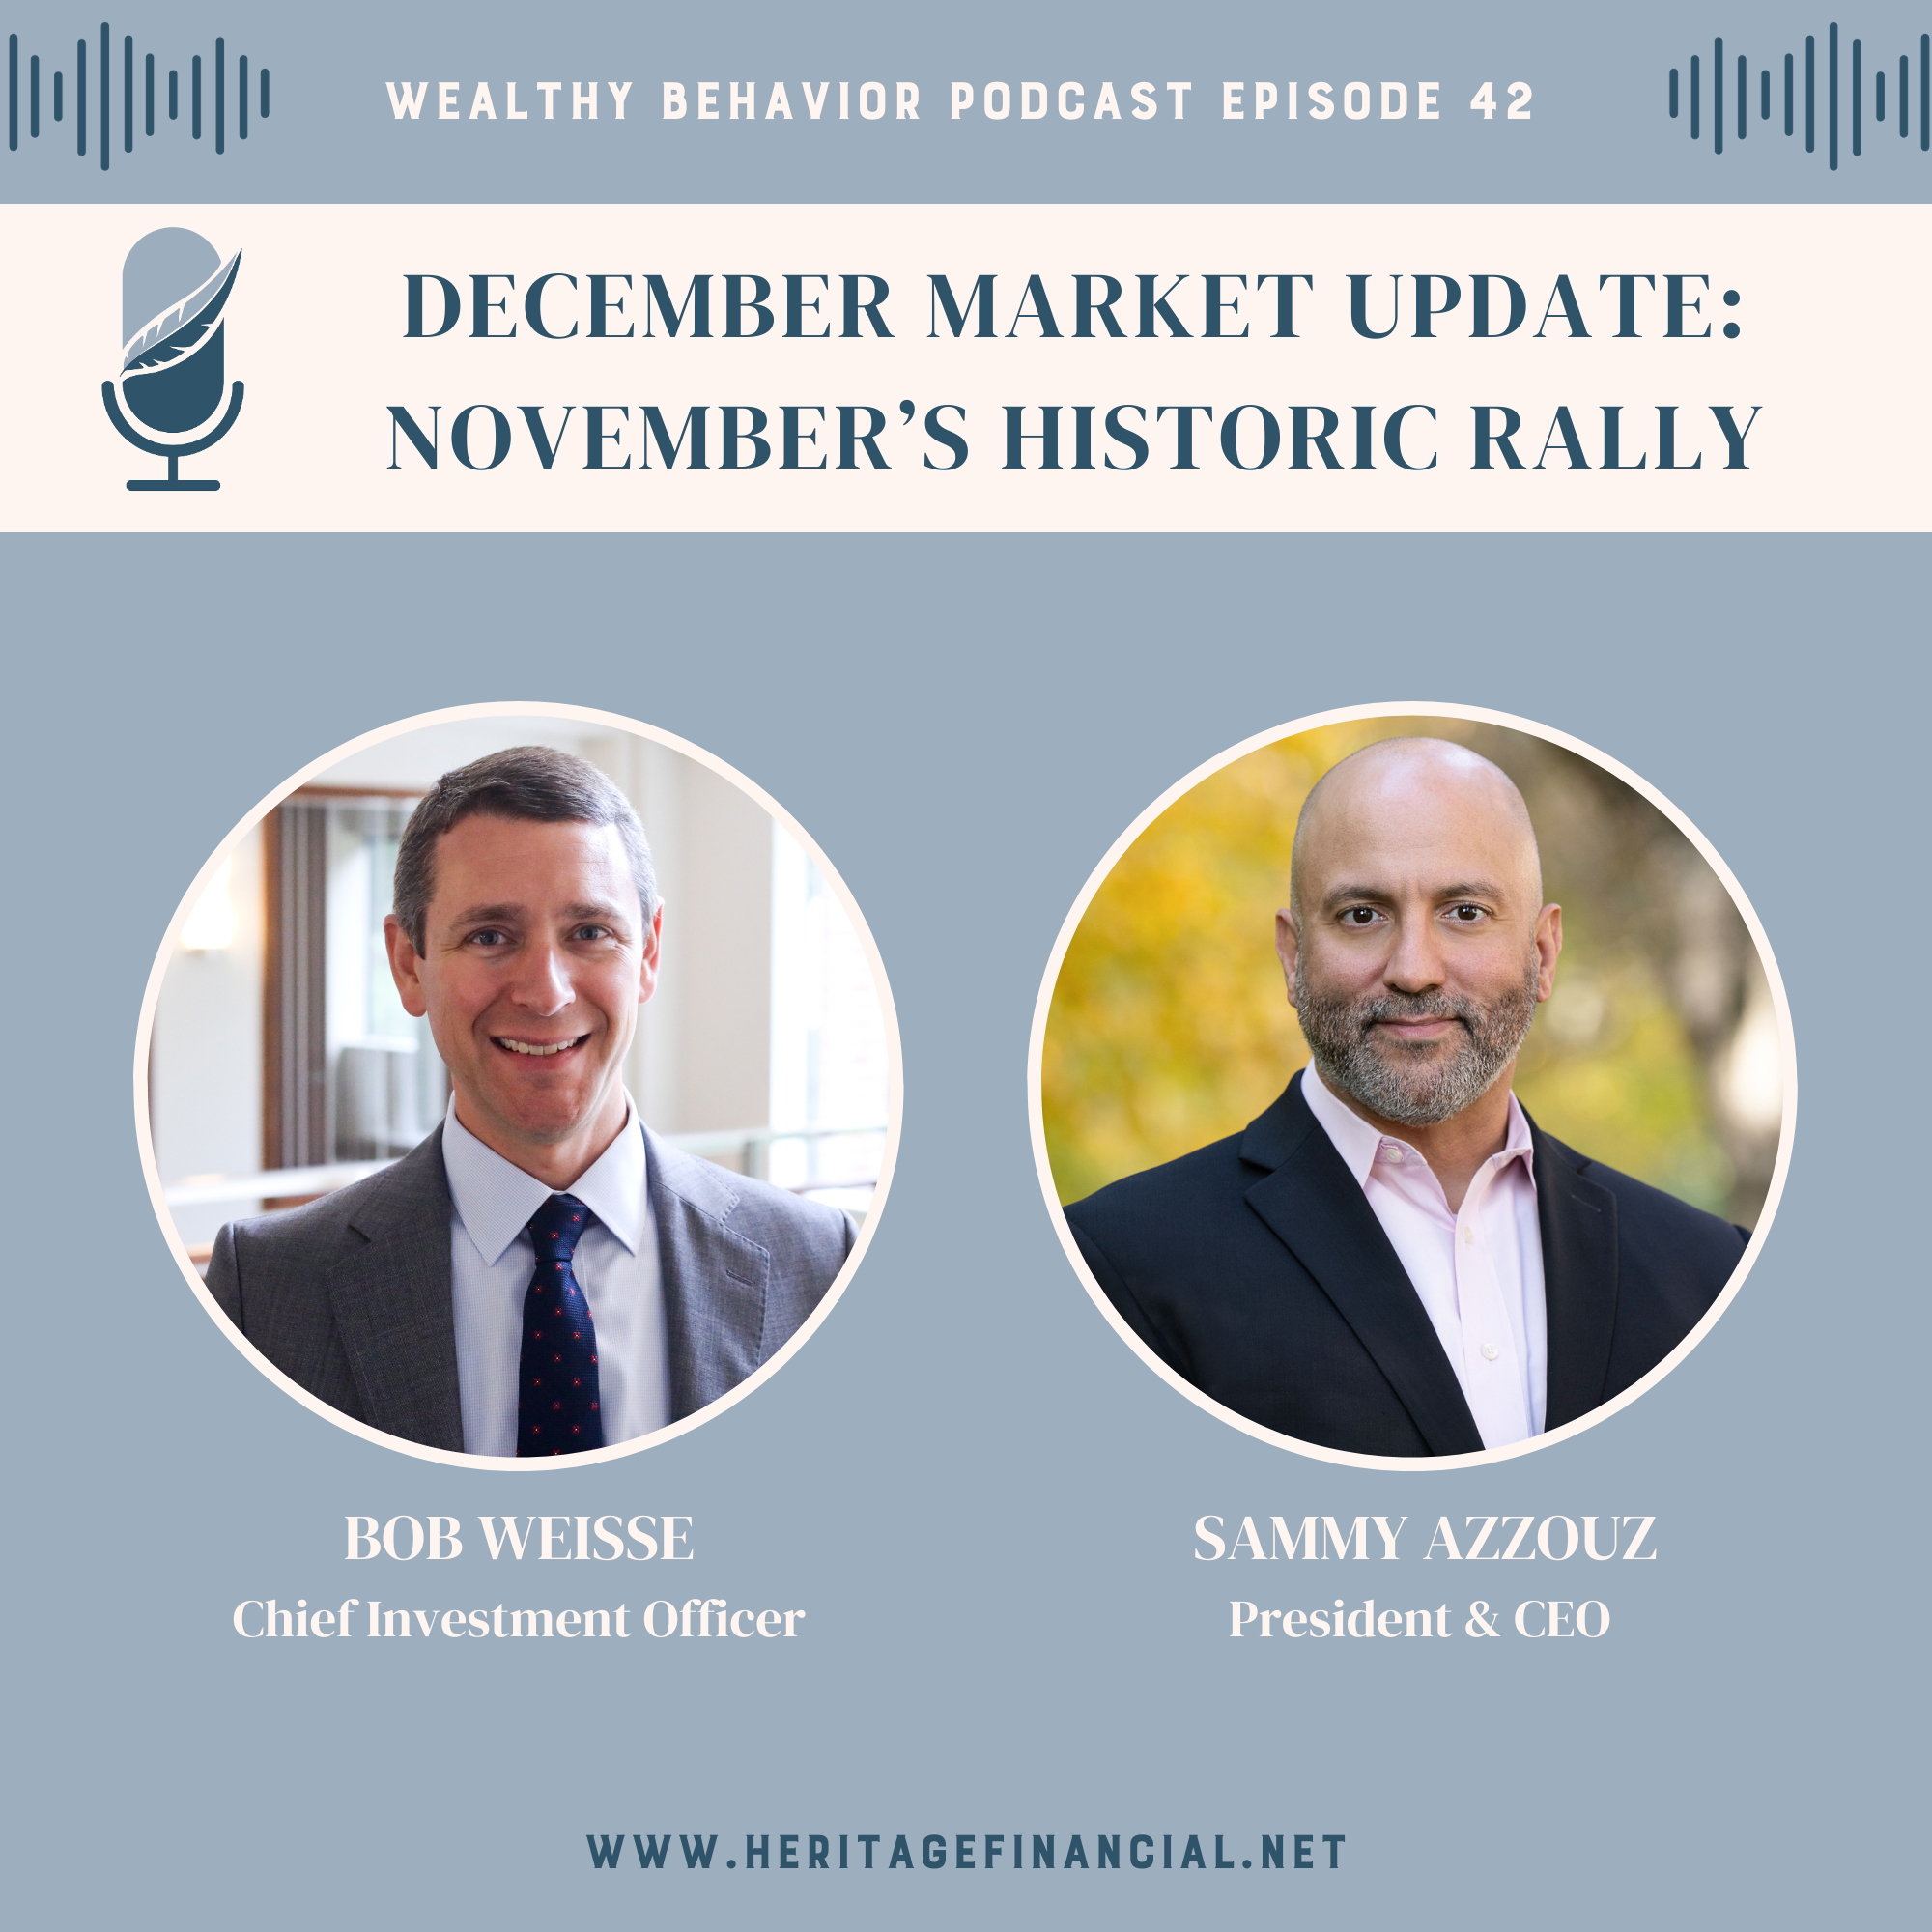 November's historic market rally